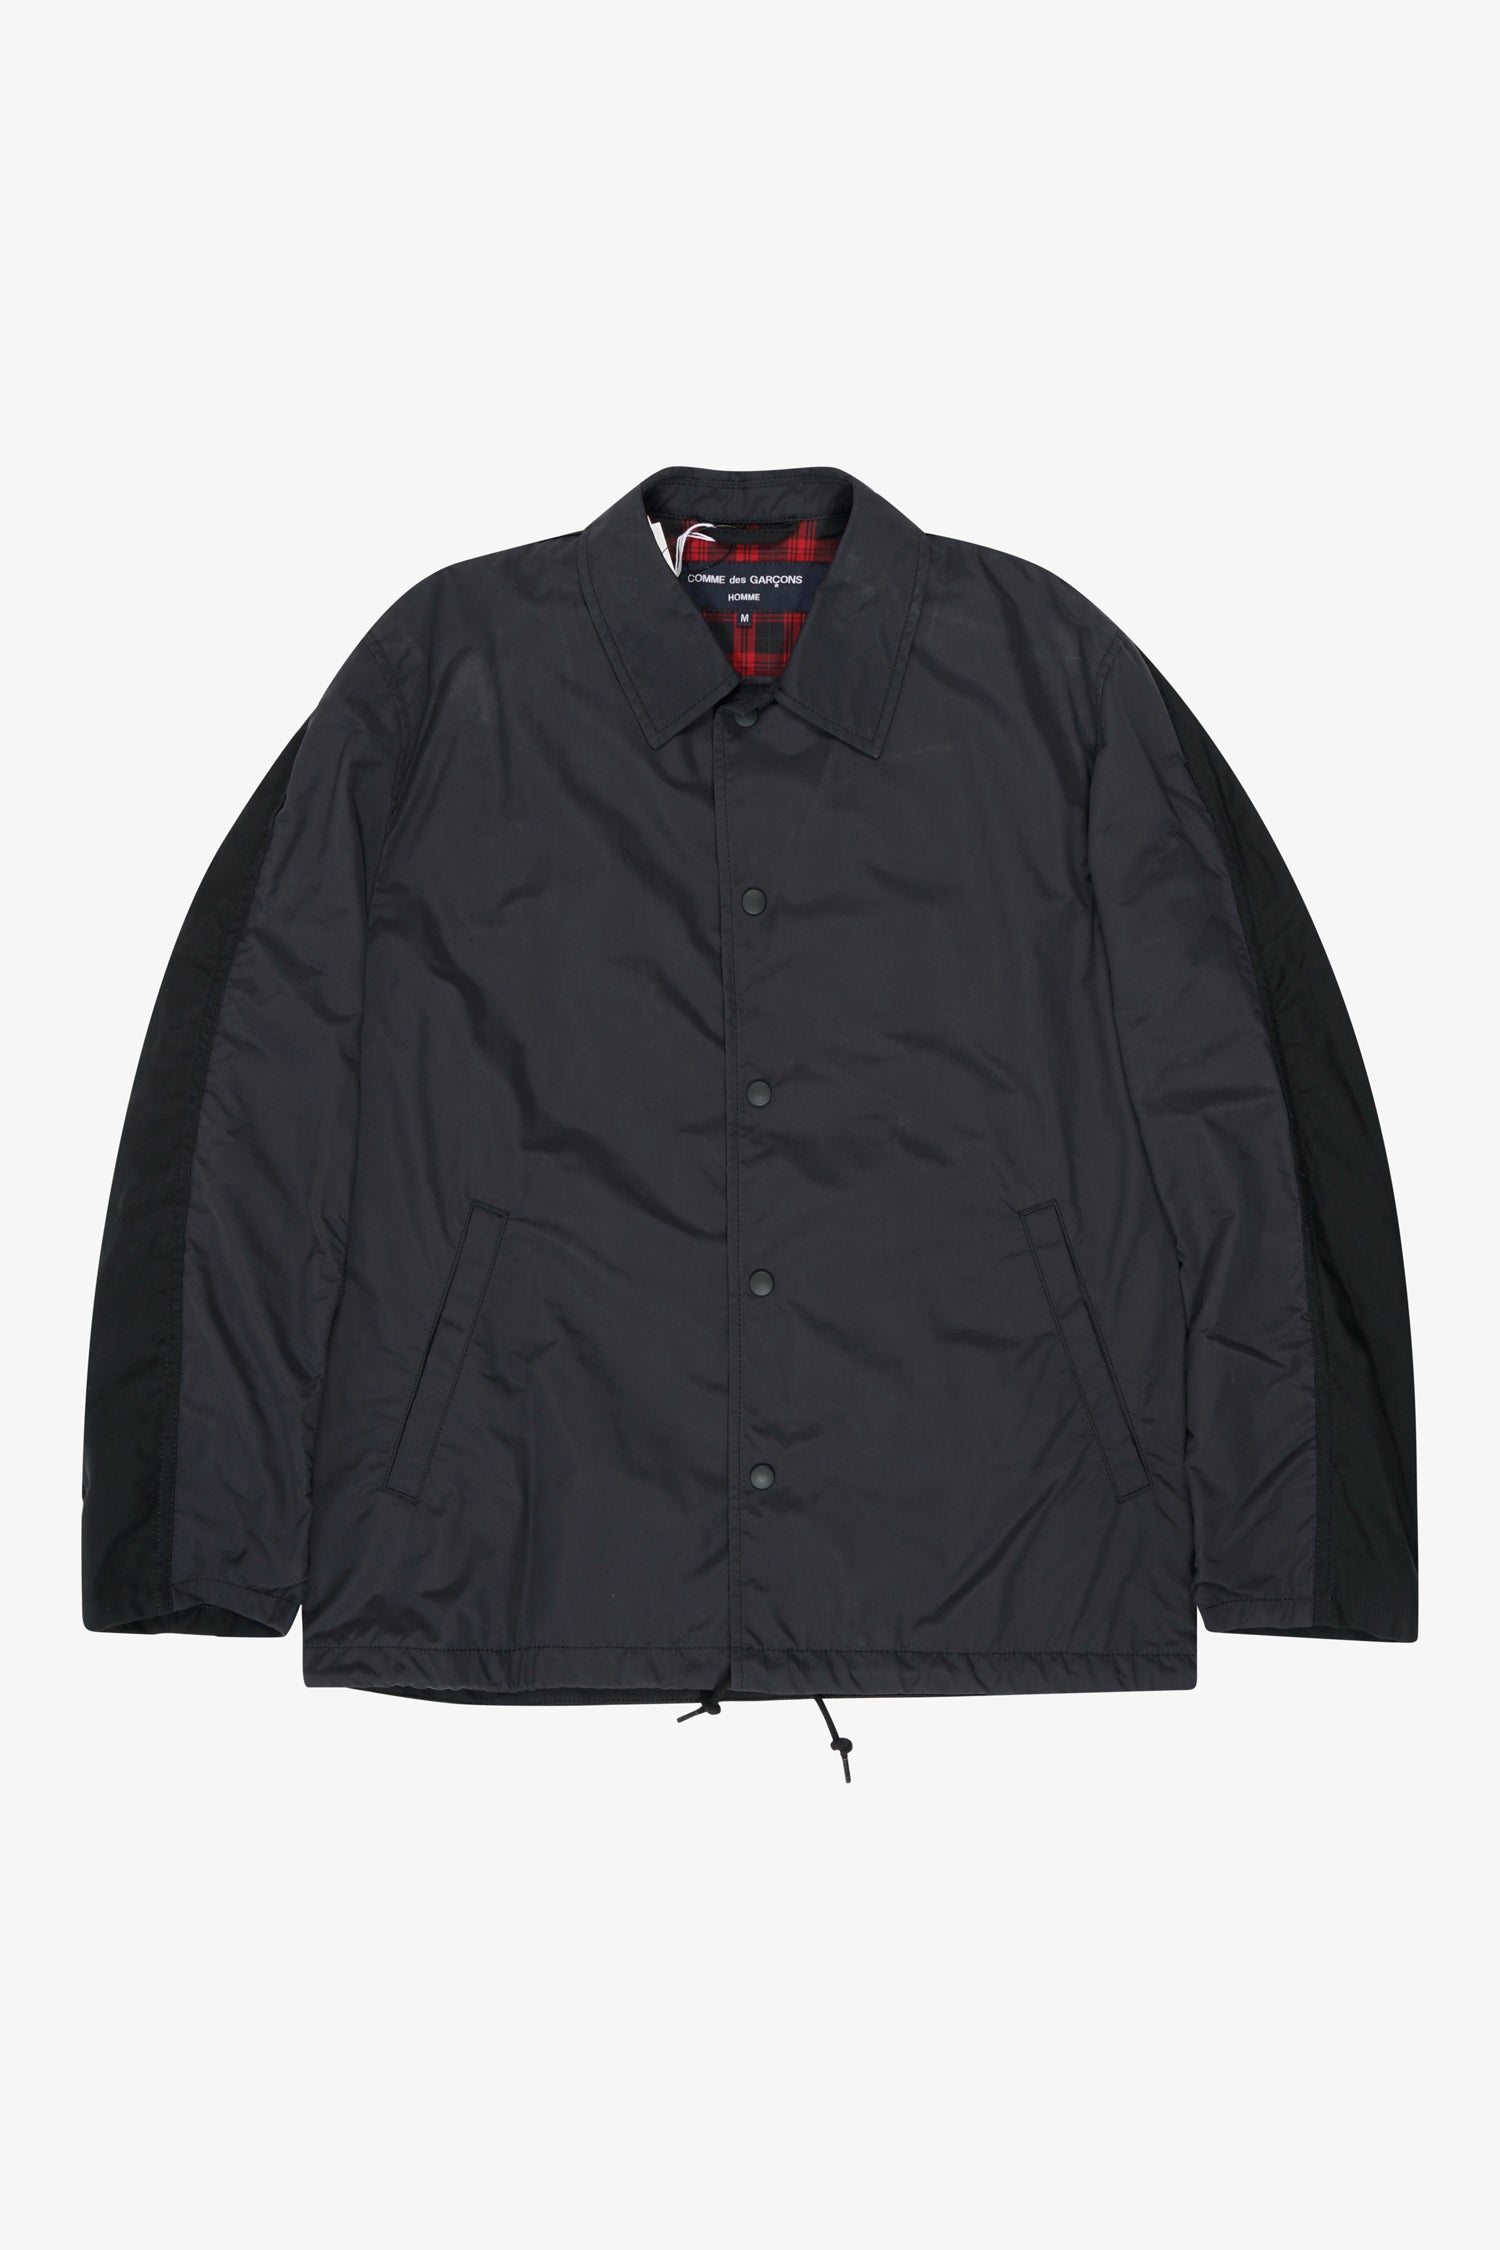 Selectshop FRAME - COMME DES GARÇONS HOMME Nylon Jacket Outerwear Dubai